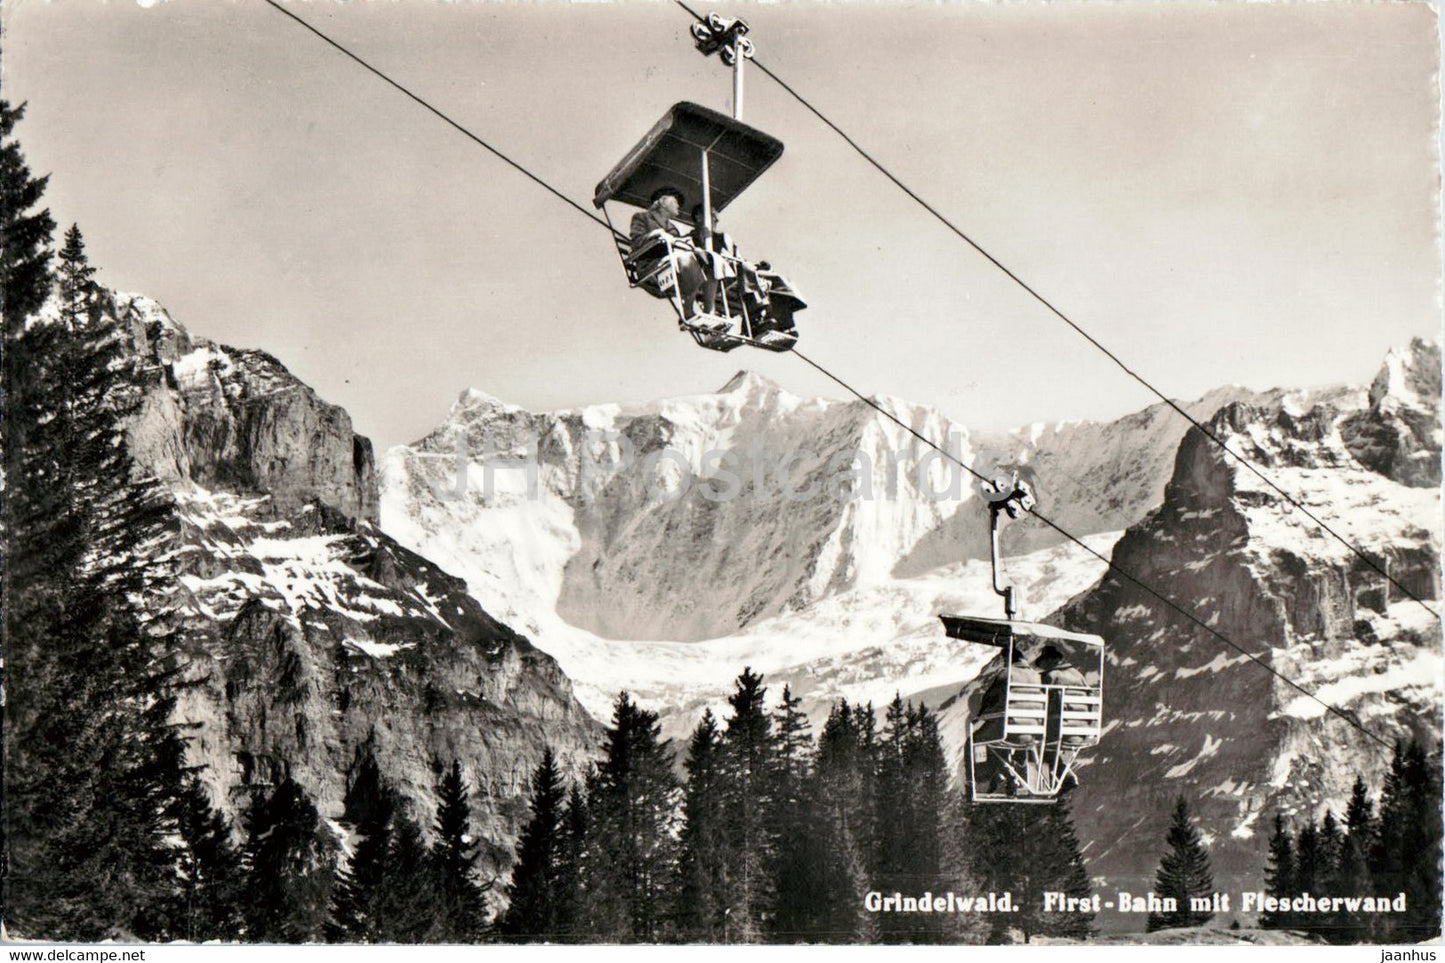 Grindelwald - First Bahn mit Flescherwand - cable car - 12074 - 1964 - Switzerland - used - JH Postcards